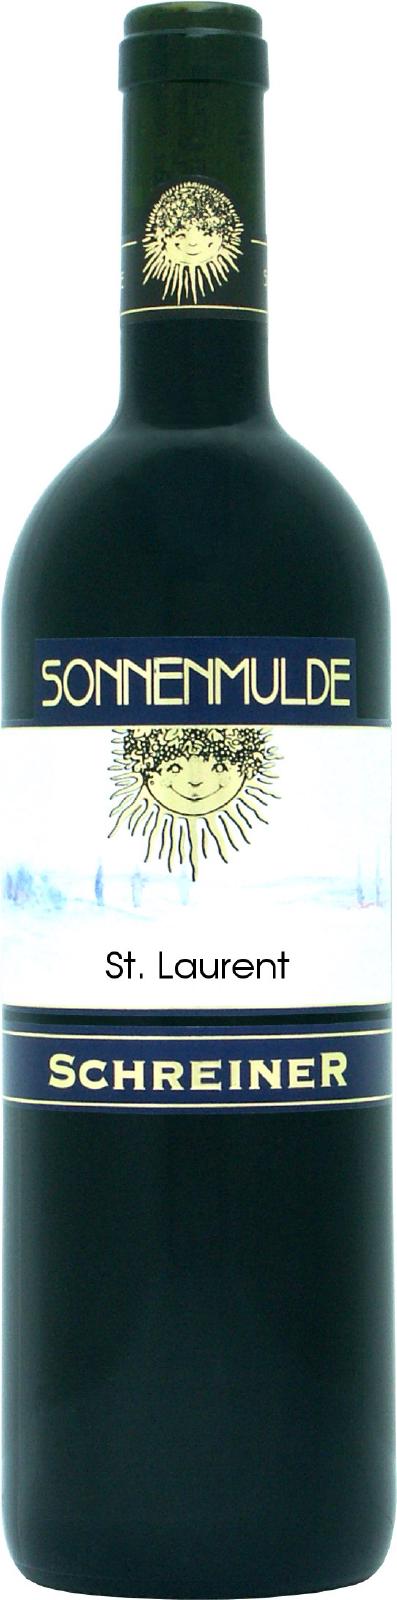 A bottle of St. Laurent